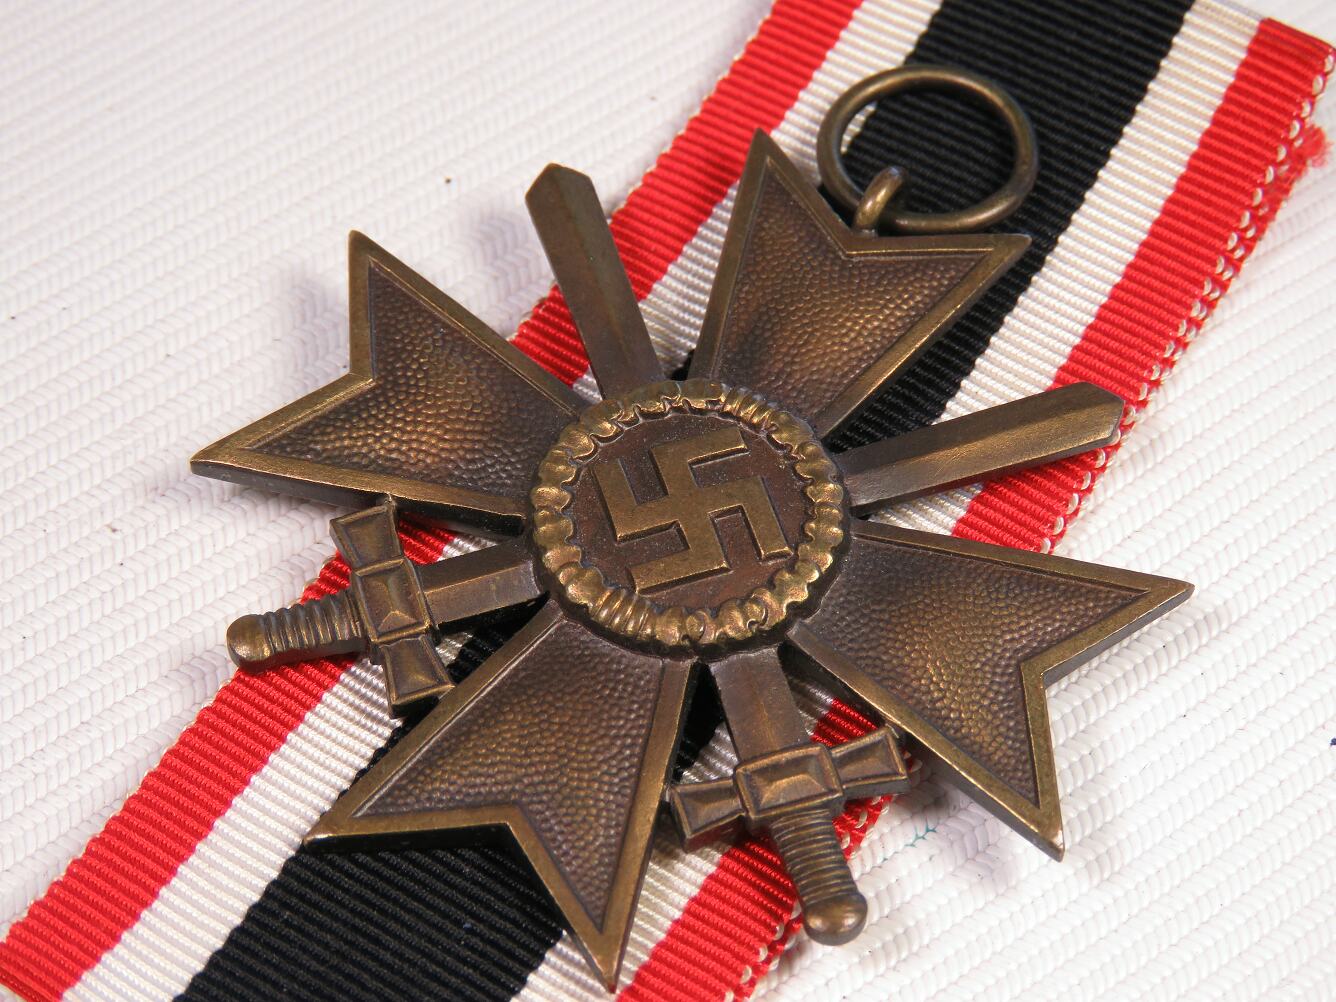 Band zum Kriegsverdienstkreuz 2.Klasse mit Schwerter 1939 KVK 